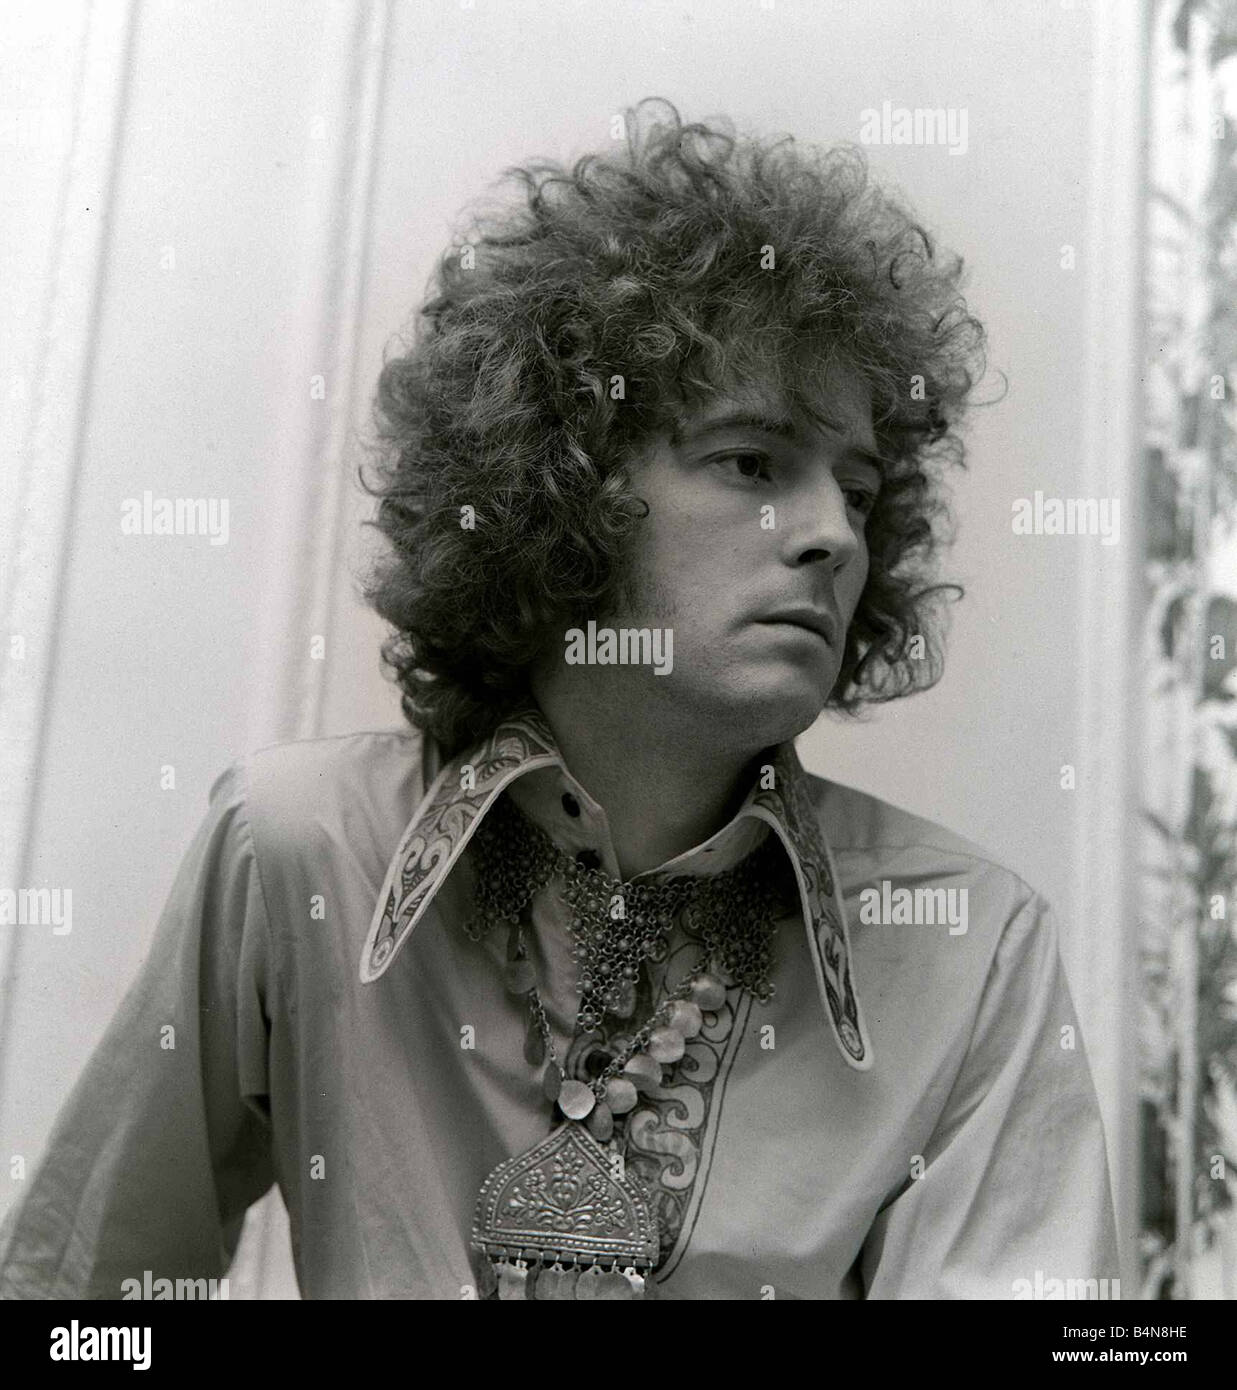 Eric Clapton Juin 1967 de la crème pop group, montre son cheveux bouclés créé pour lui par une fin de l'Ouest mesdames coiffure 1967 Banque D'Images